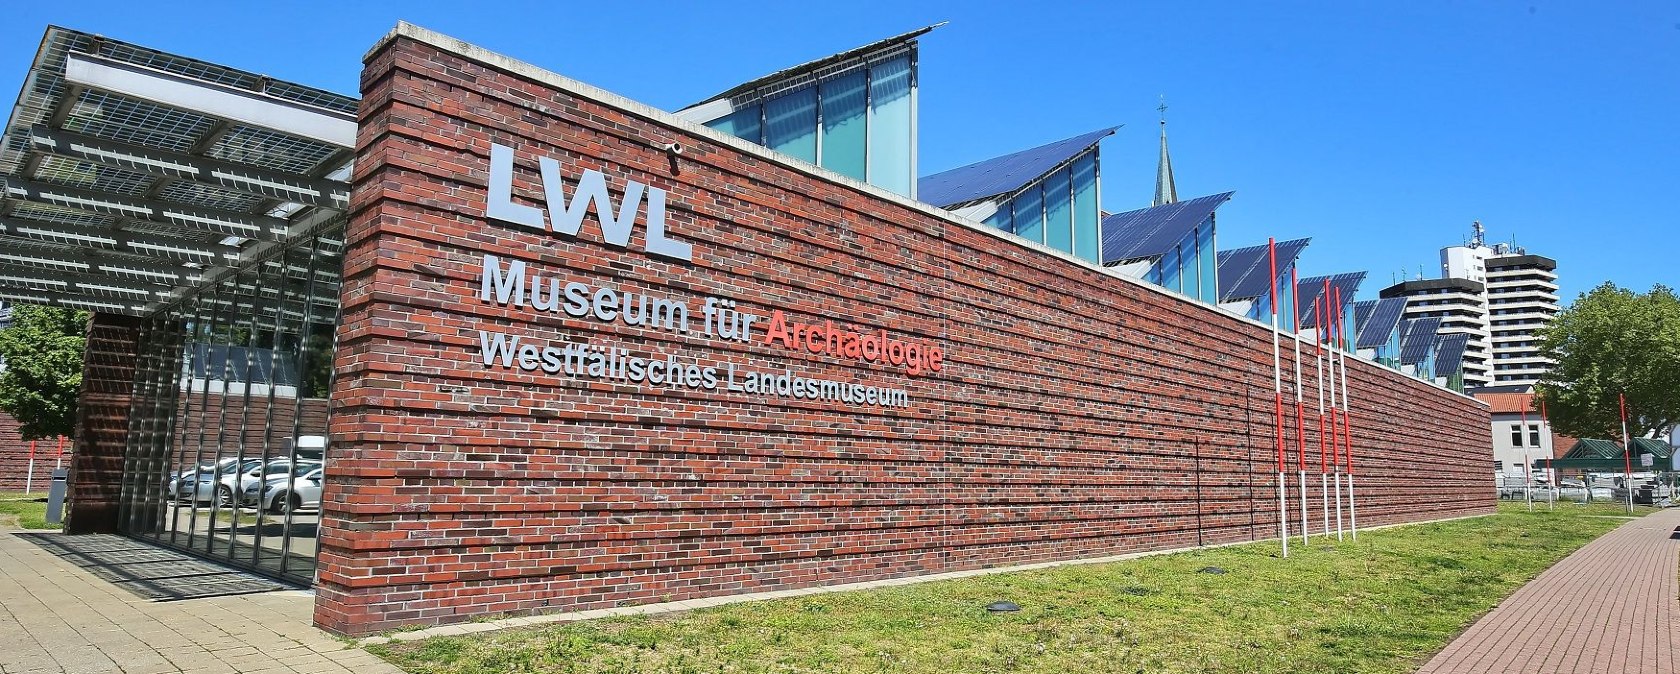 LWL-Museum für Archäologie, Außenansicht, © LWL/G. Biedermann